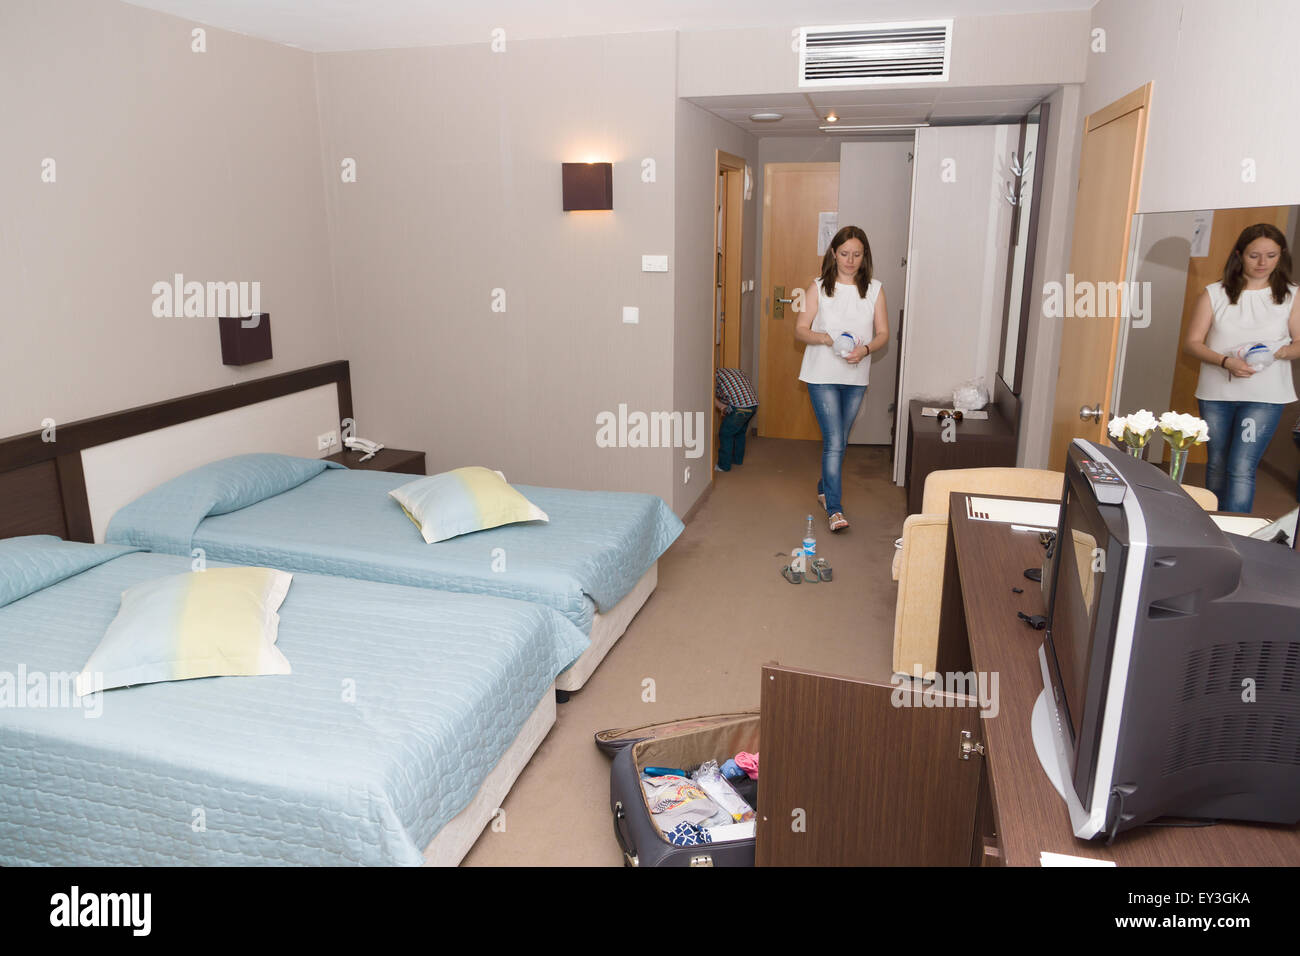 La habitación del hotel en el que reside el desempaquetado de la maleta llegó turista Foto de stock